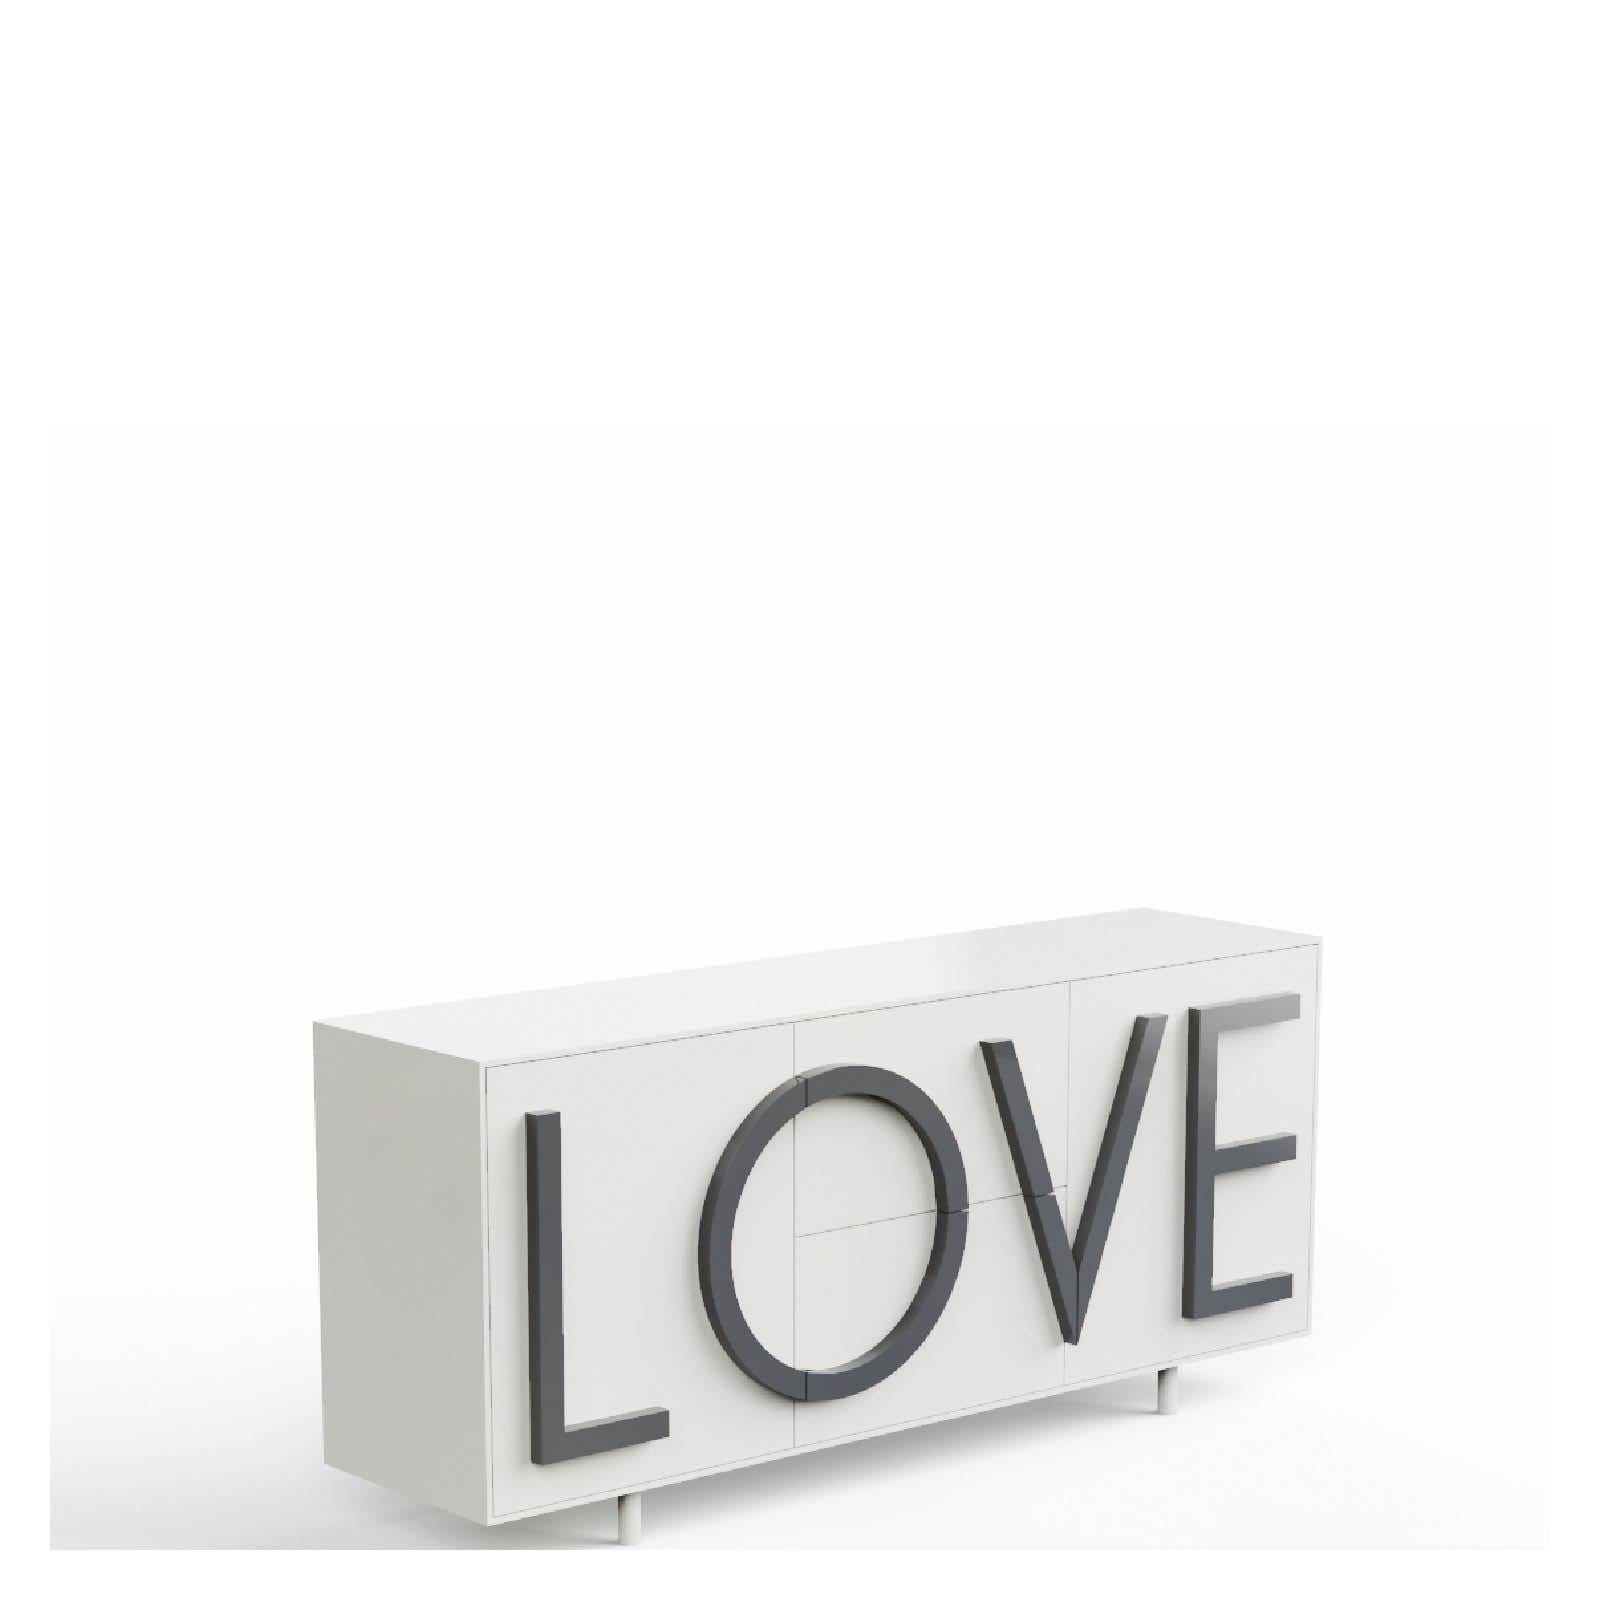 LOVE  cabinet  by Fabio Novembre for Driade For Sale 2